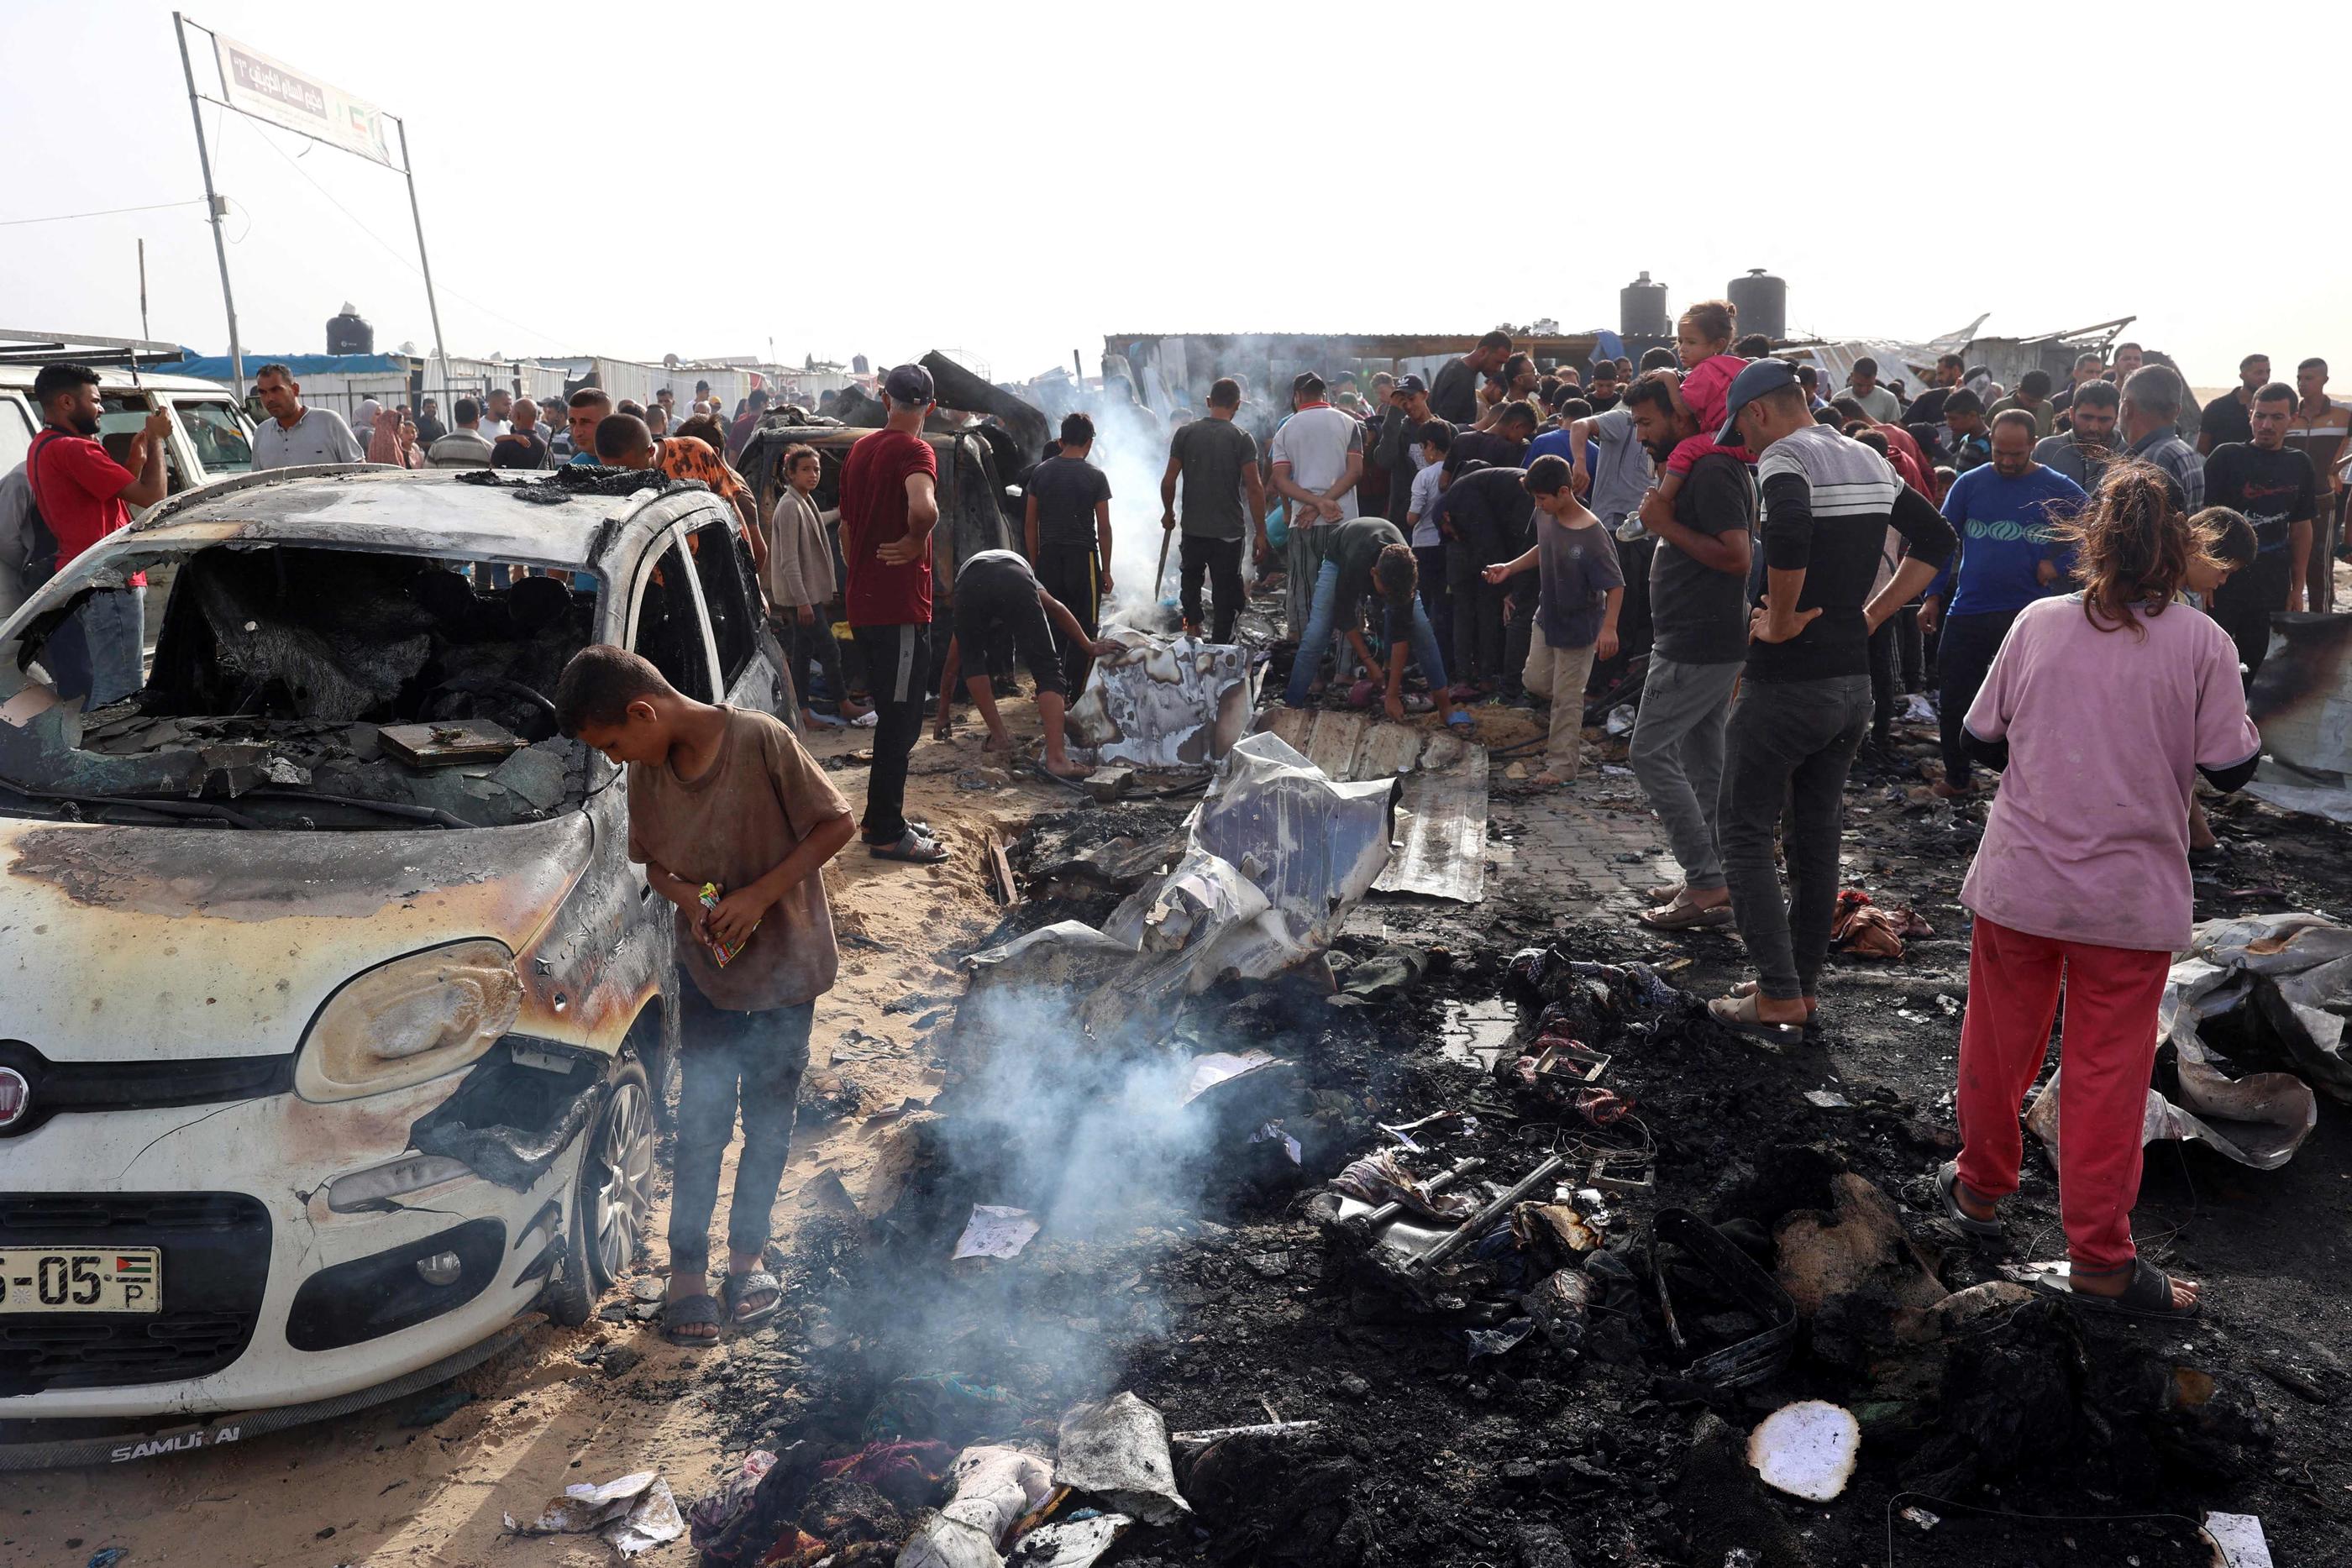 Au lendemain de la frappe israélienne sur un camp de réfugiés près de Rafah, des images montrent les restes carbonisés de tentes de fortune et de véhicules. AFP/ Eyad BABA